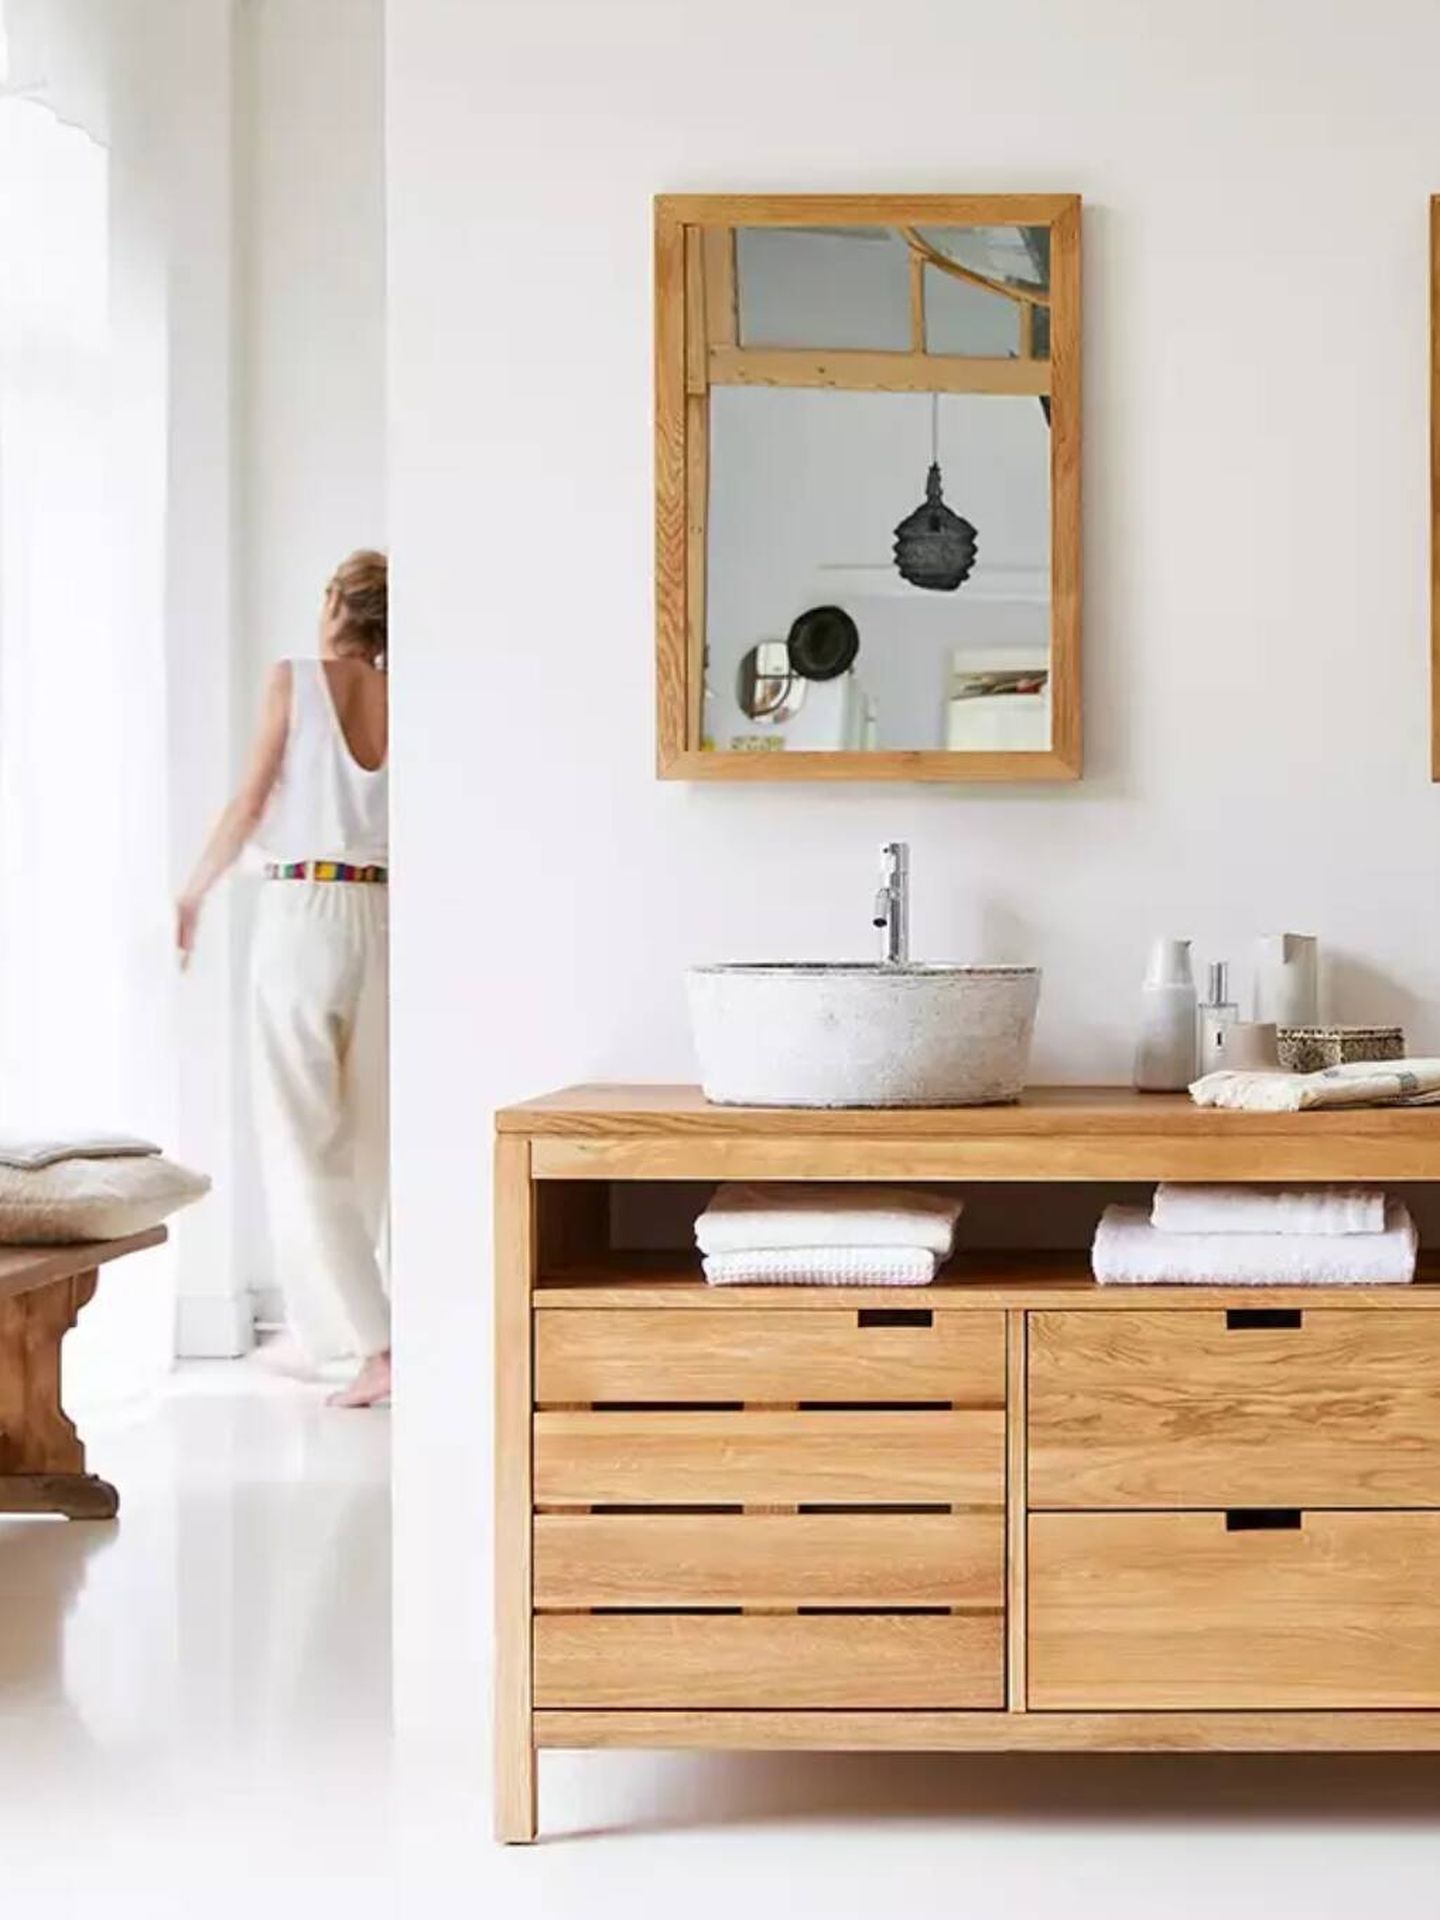 Recuerda cuidar tu casa con los productos adecuados, baño con muebles de madera de Tikamoon. (Cortesía)